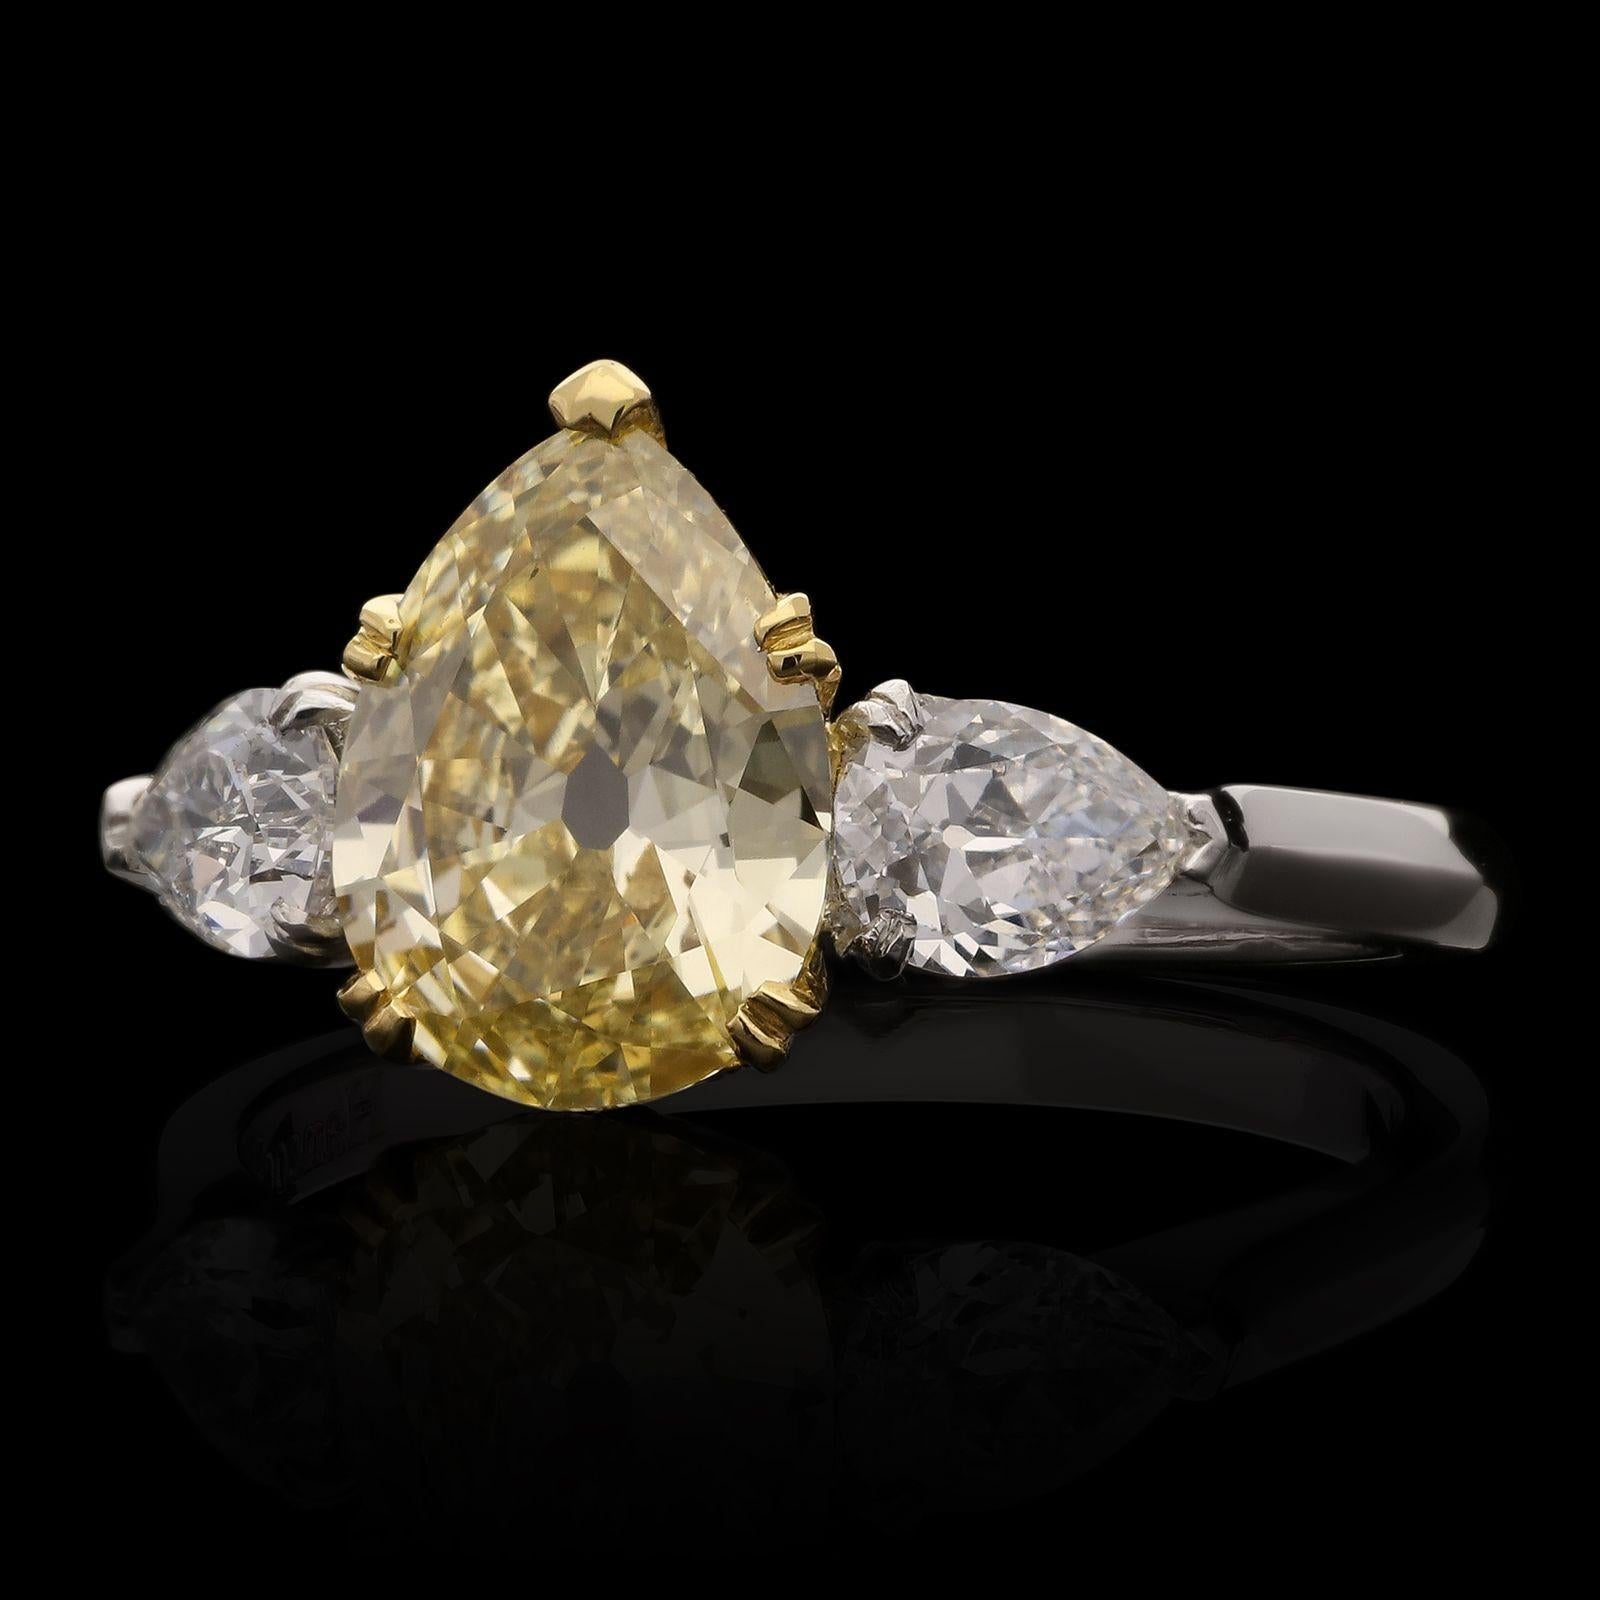 Ein wunderschöner Fancy-Color-Diamantring von Hancocks, besetzt mit einem birnenförmigen Diamanten im Altschliff mit einem Gewicht von 1,49 ct, Farbe Fancy Yellow und Reinheit VS2, in einer Doppelkrallenfassung aus 18 ct Gelbgold zwischen Schultern